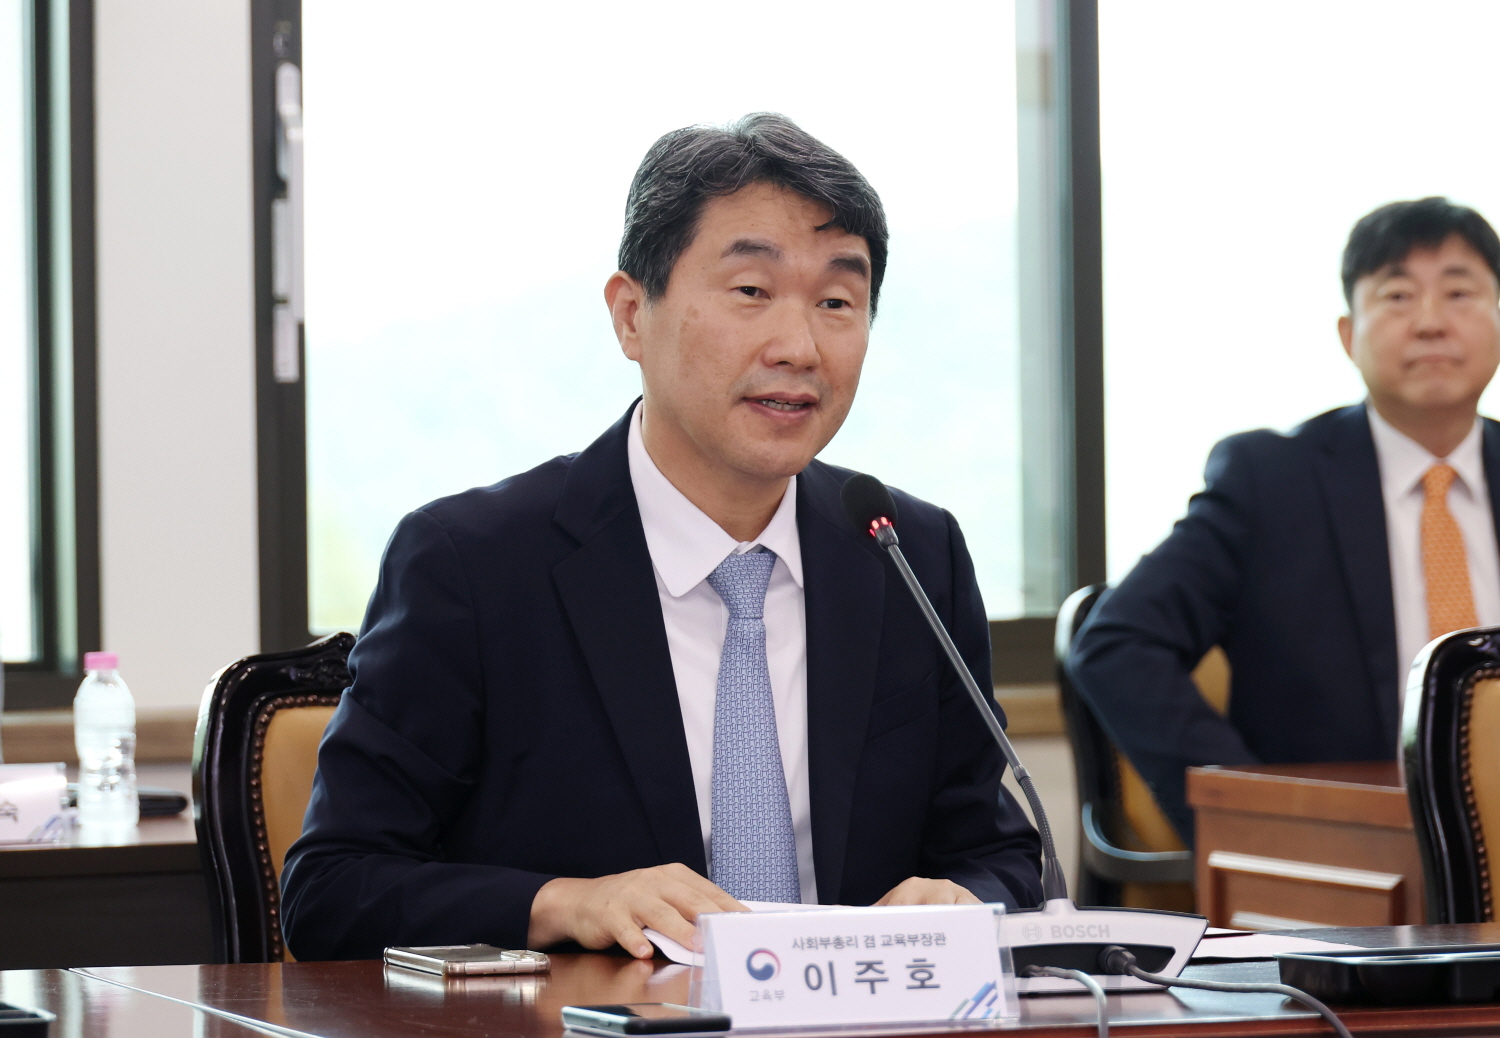 이주호 부총리 겸 교육부장관은 8월 16일(수), 서울대학교에서 열린 국가거점국립대학교 간 협력을 위한 협약식에 참석했다. 